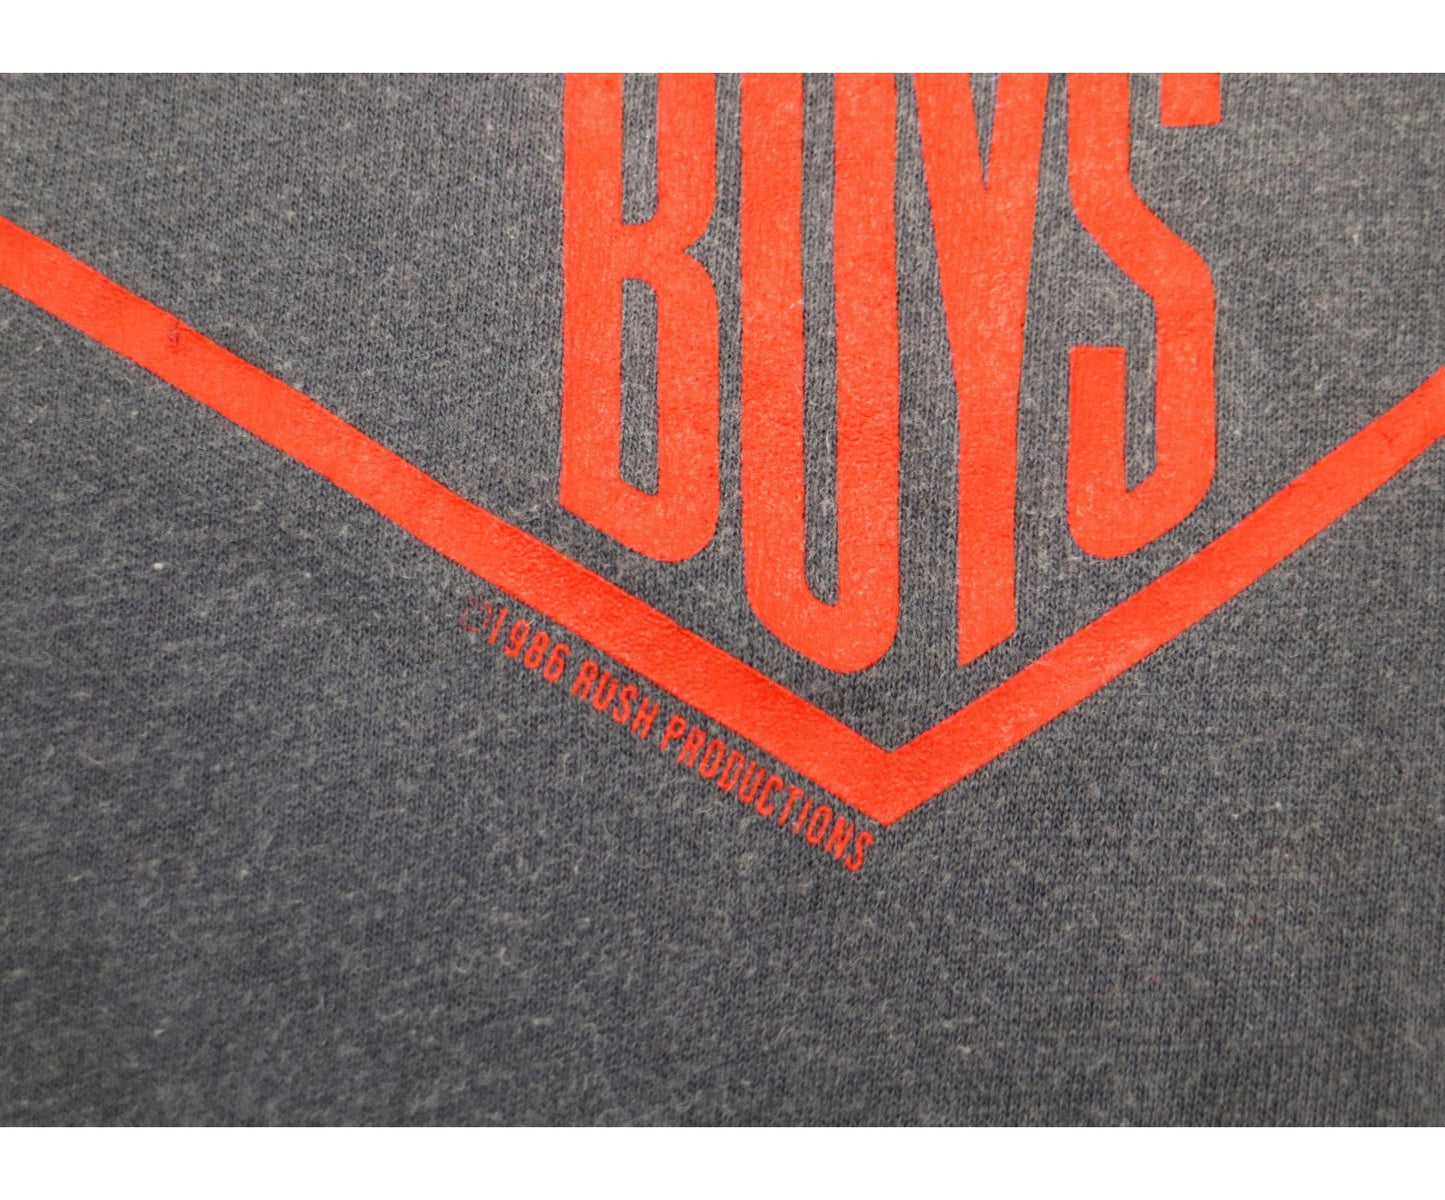 [빈티지 옷] 80 년대 Beastie Boys 힙합 티셔츠